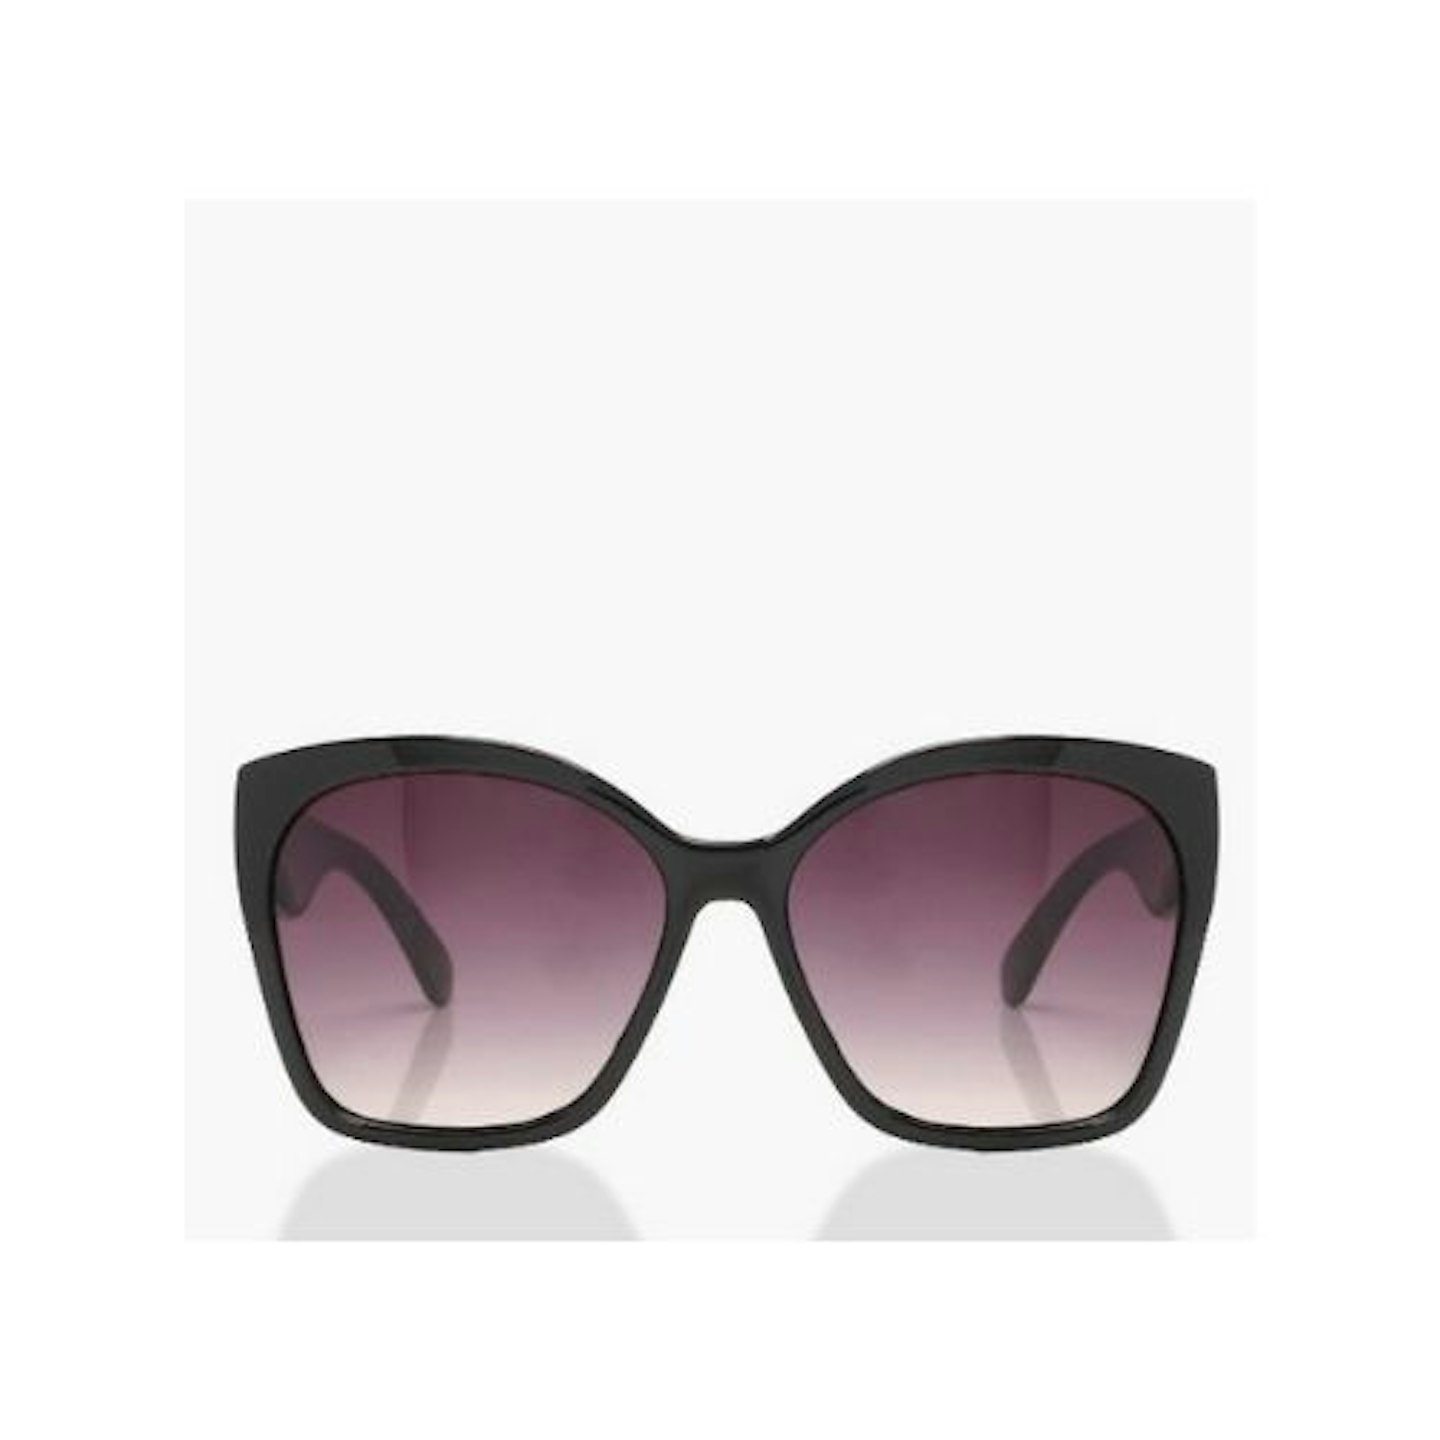 SVNX Oversized Sunglasses in Black